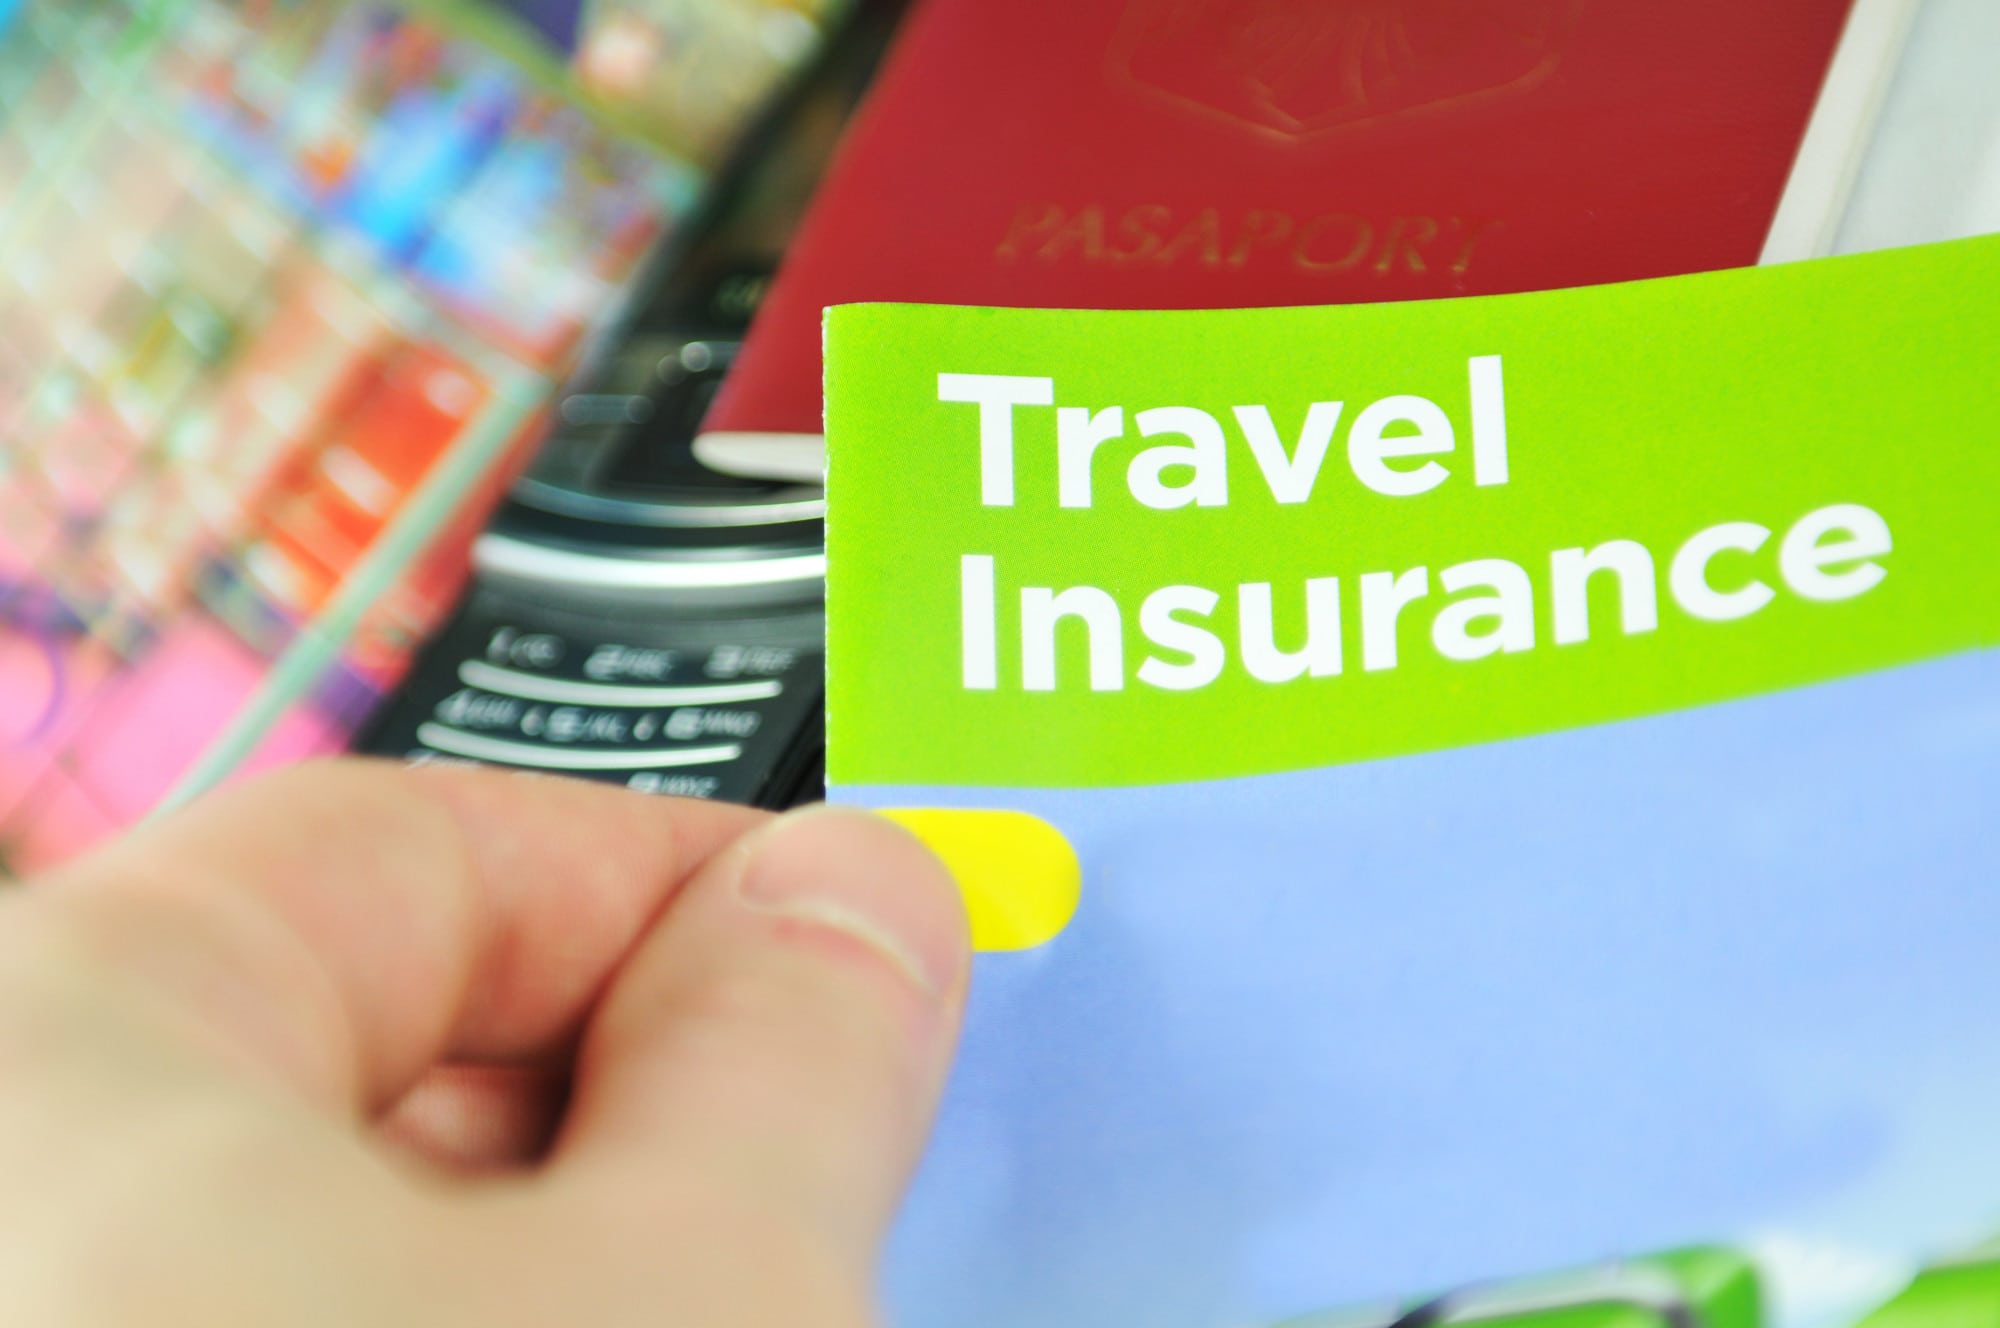 tugo travel insurance us claims address